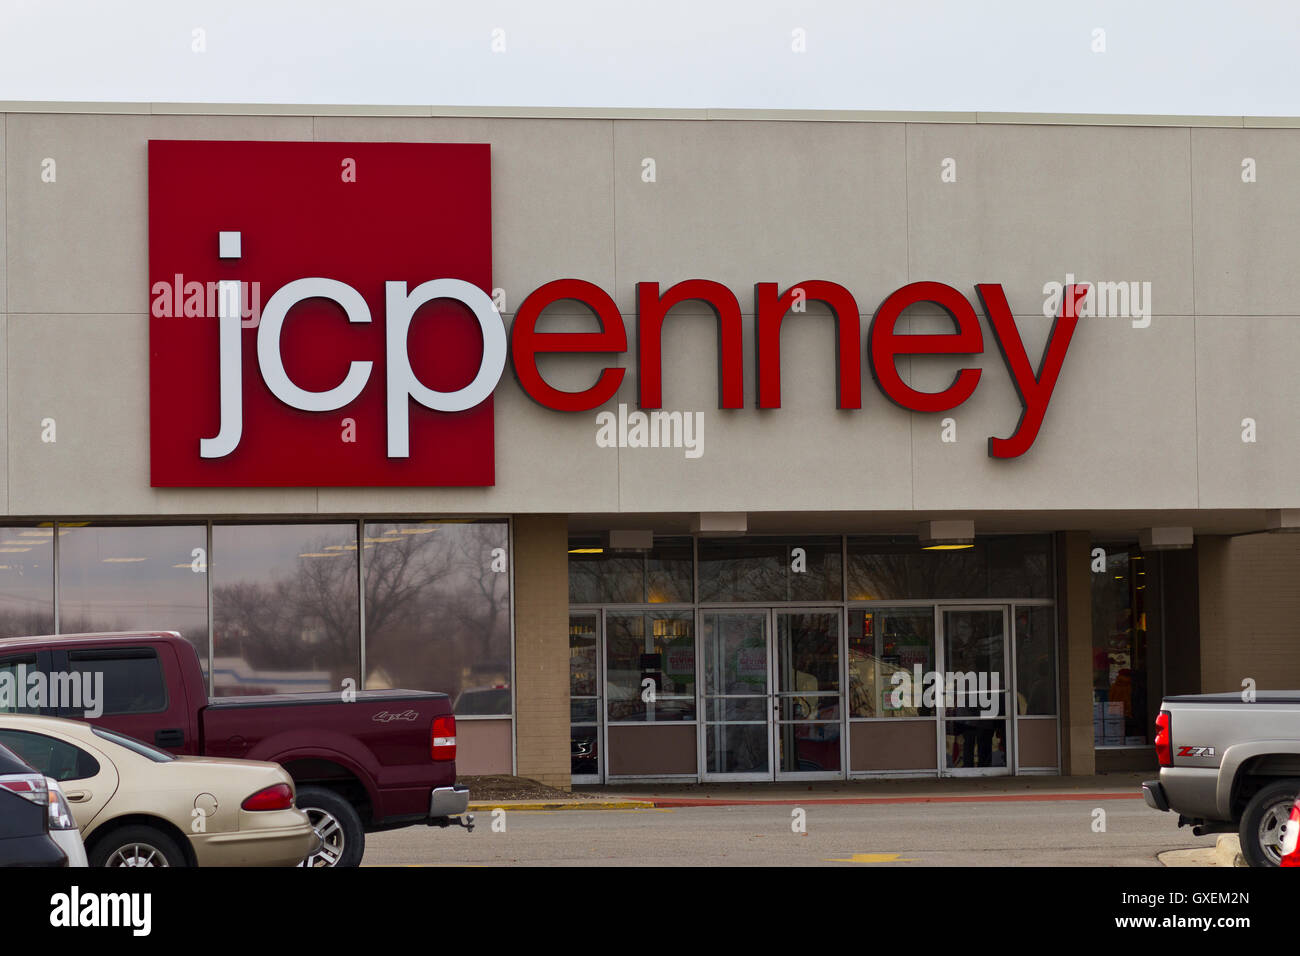 Indianapolis - Circa Décembre 2015 : JC Penney Emplacement Centre Commercial de vente au détail. Pce est un détaillant de vêtements et d'ameublement de maison III Banque D'Images